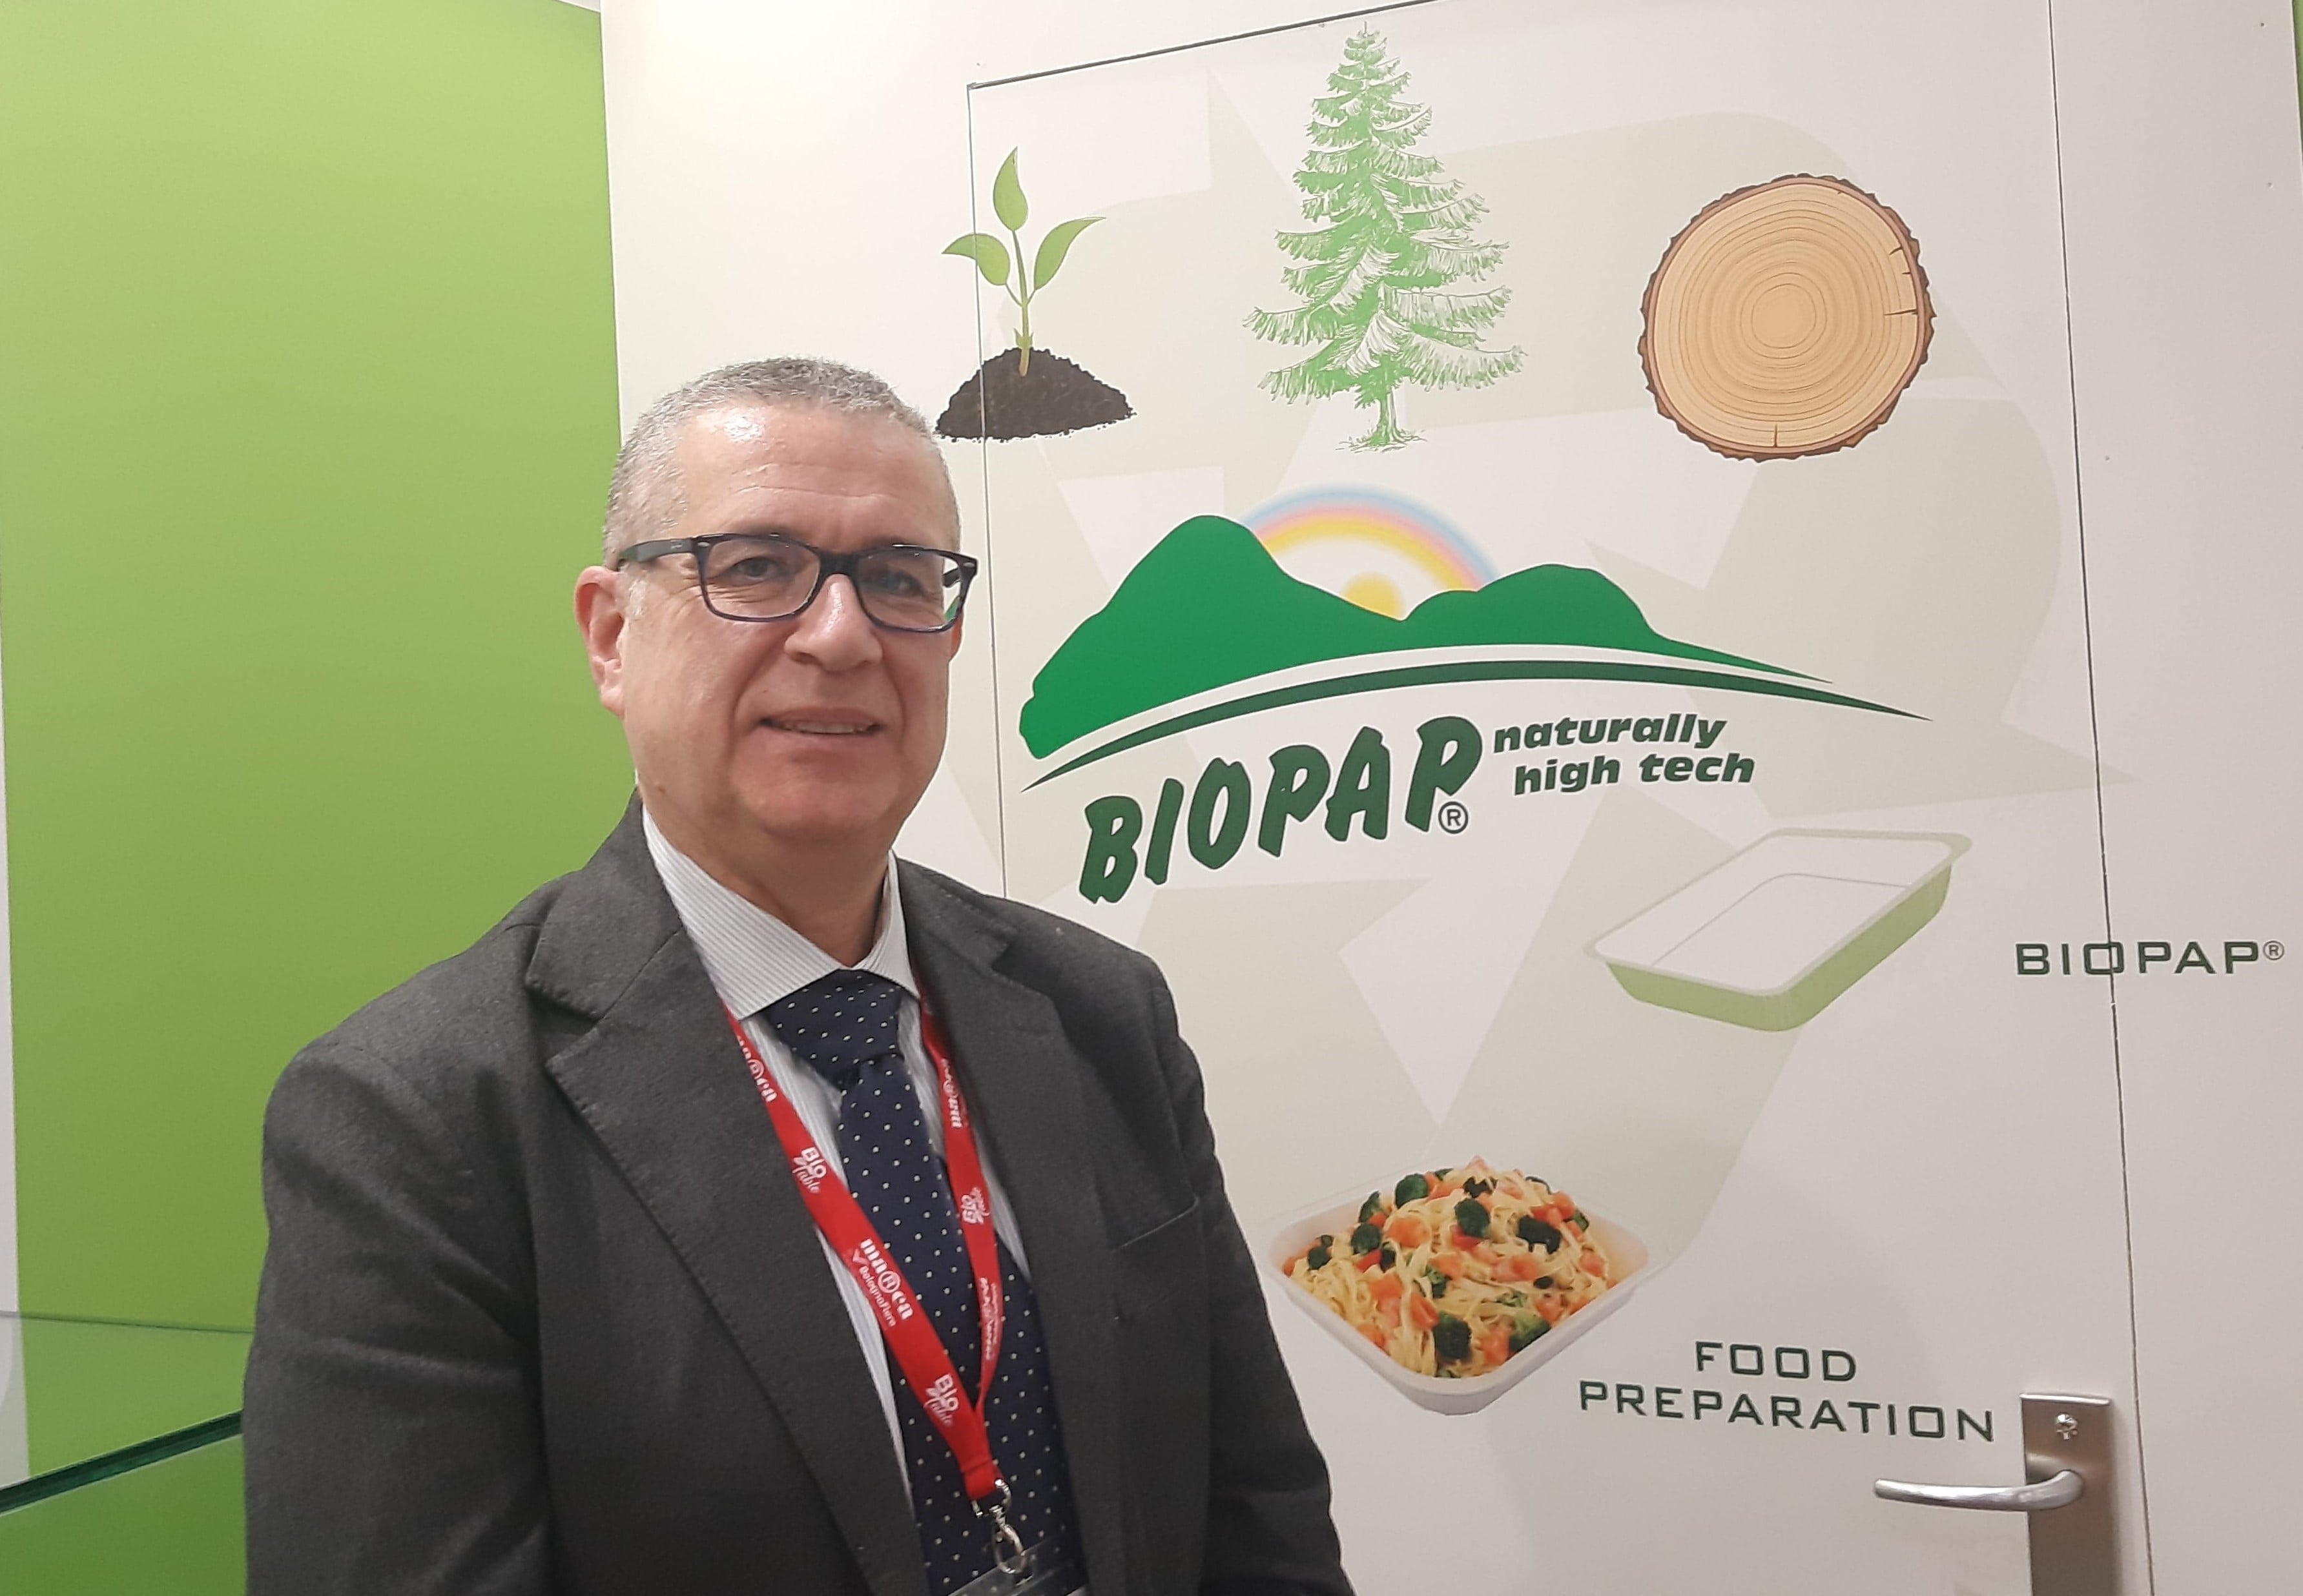 Dal freezer al forno, Biopap promuove economia circolare